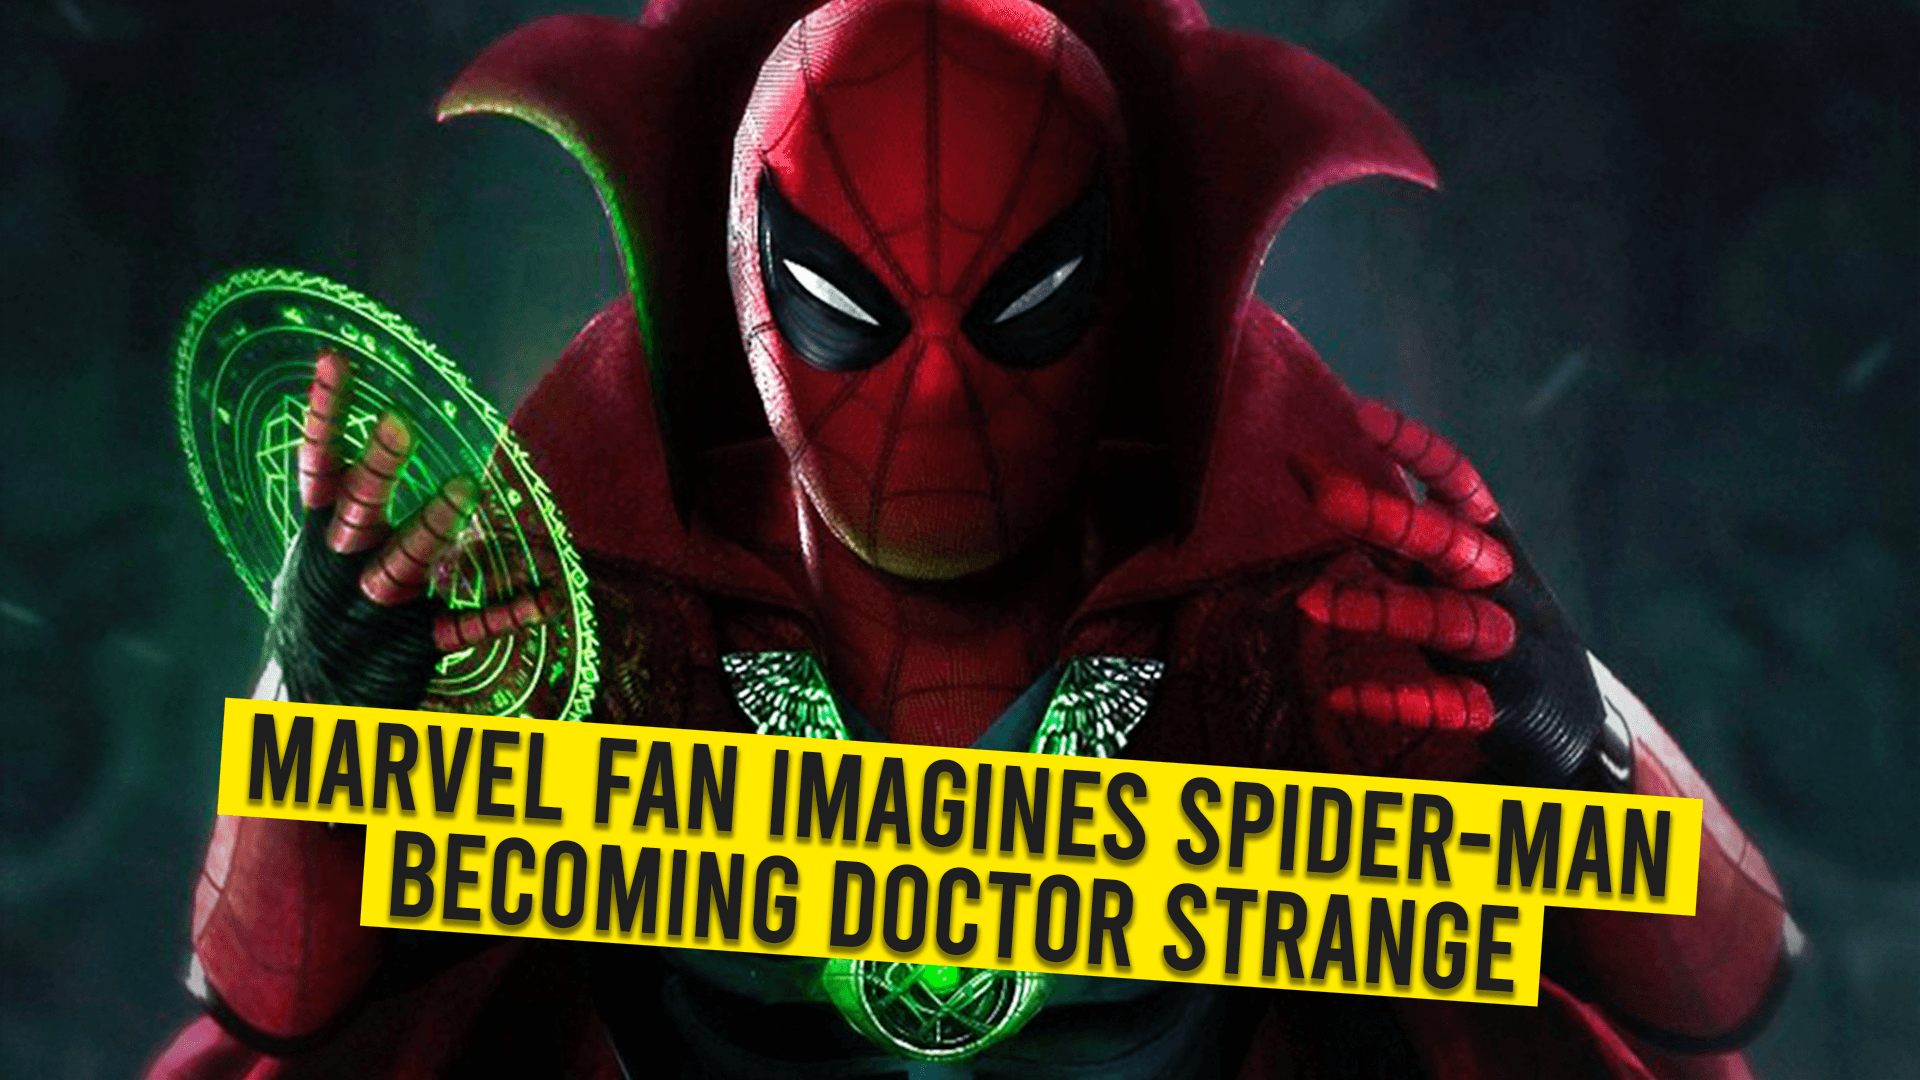 Marvel fans imagine Spider-Man becoming the sorcerer supreme